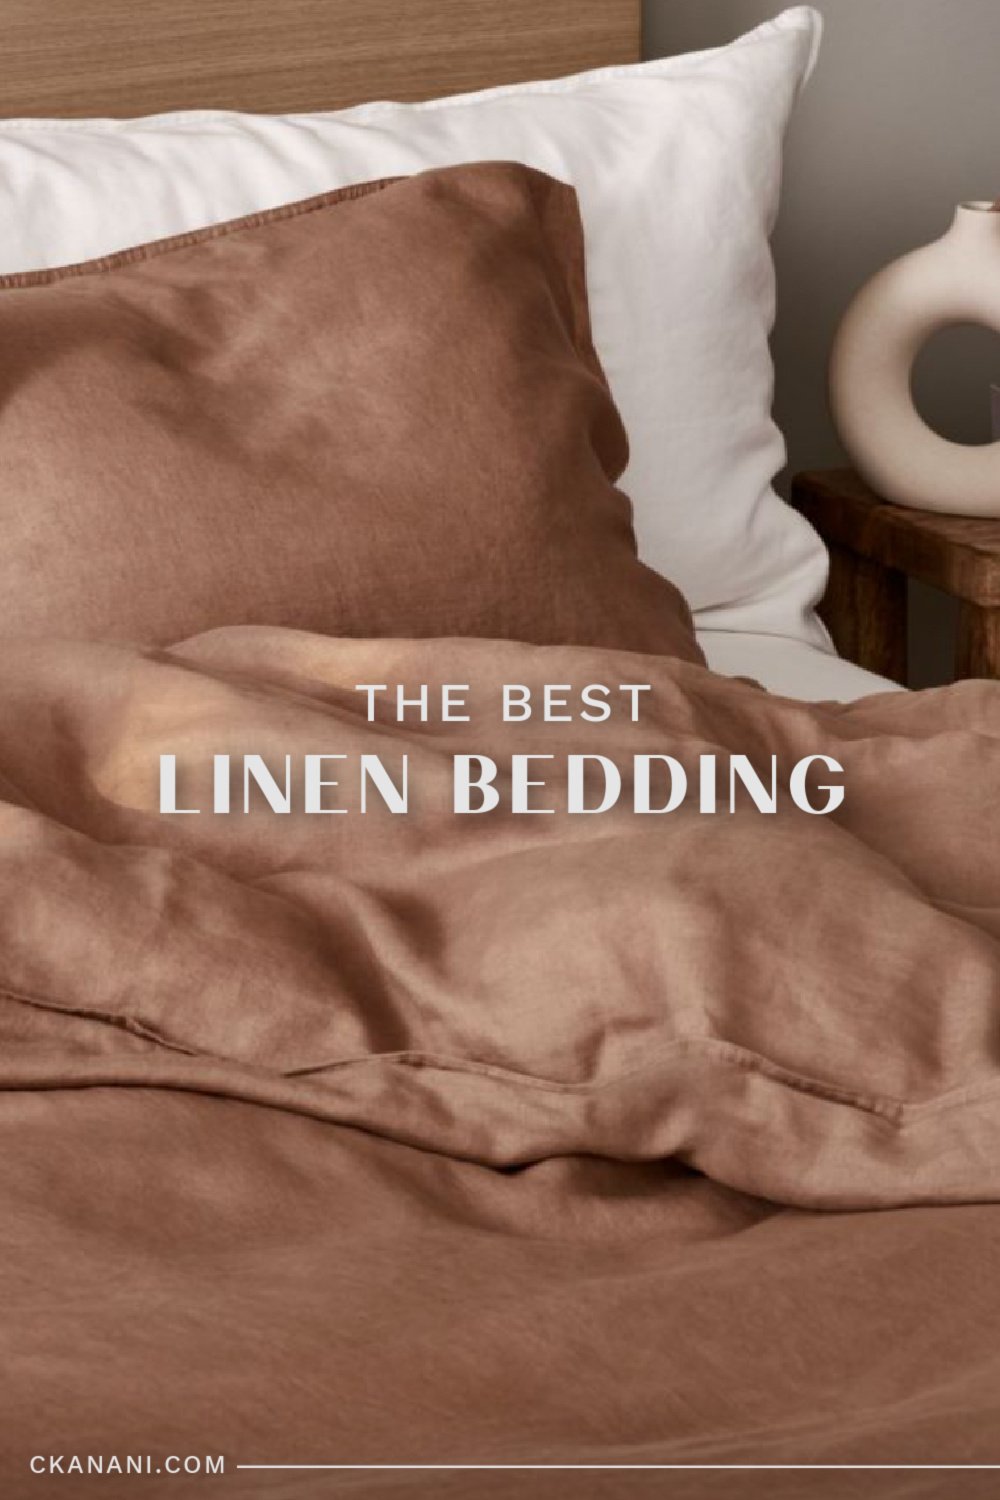 The best linen bedding